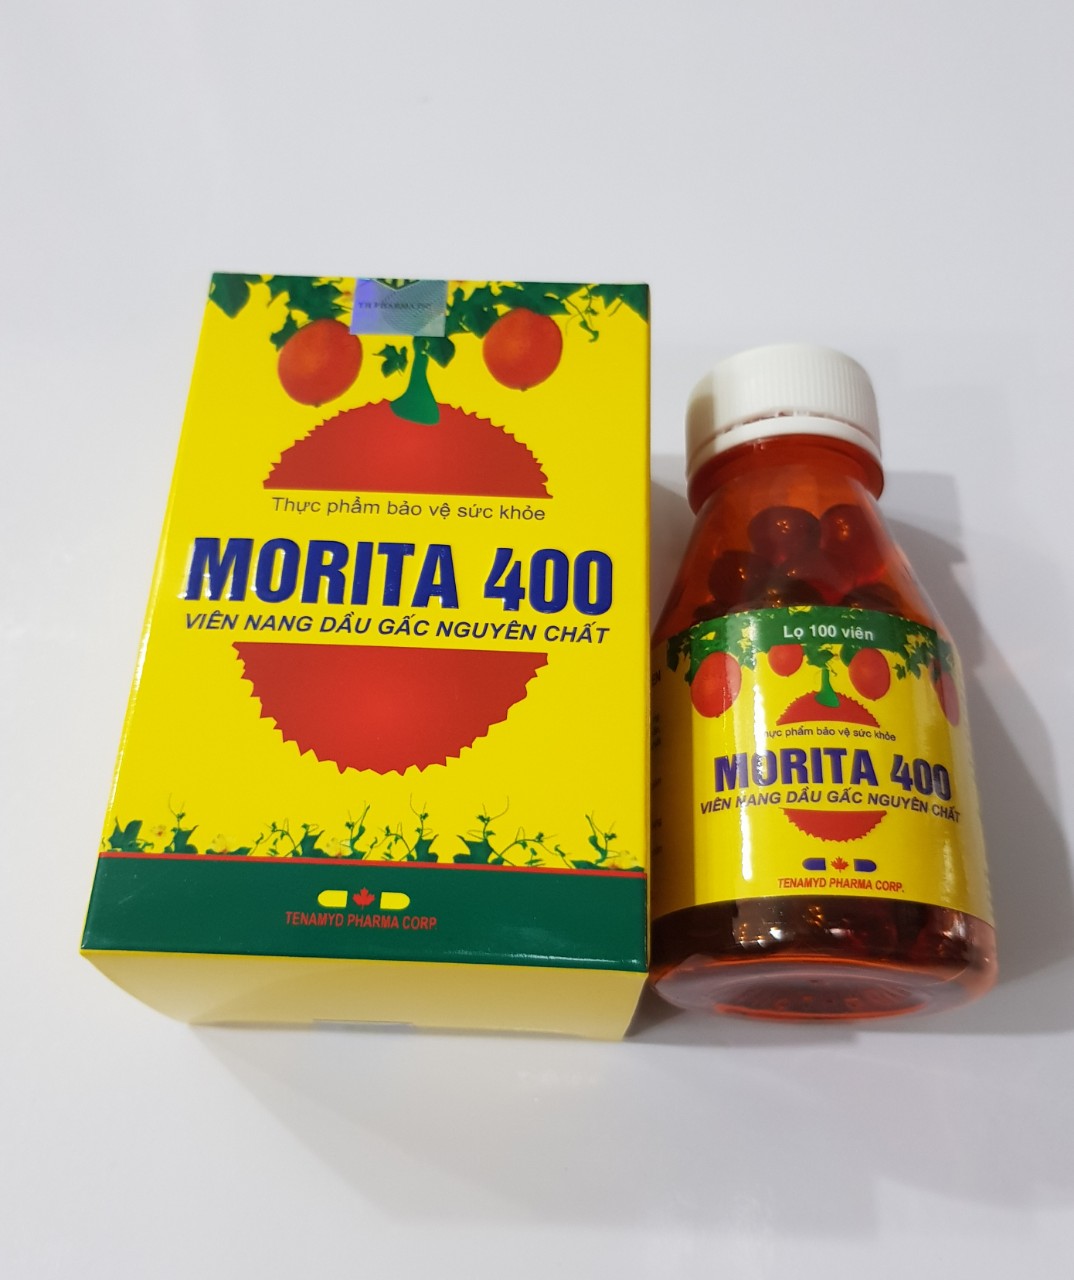 Viên dầu gấc Morita 400: Hỗ trợ giảm lão hóa mắt, chống oxy hóa mắt, khô mắt, thực phẩm bảo vệ sức khỏe.